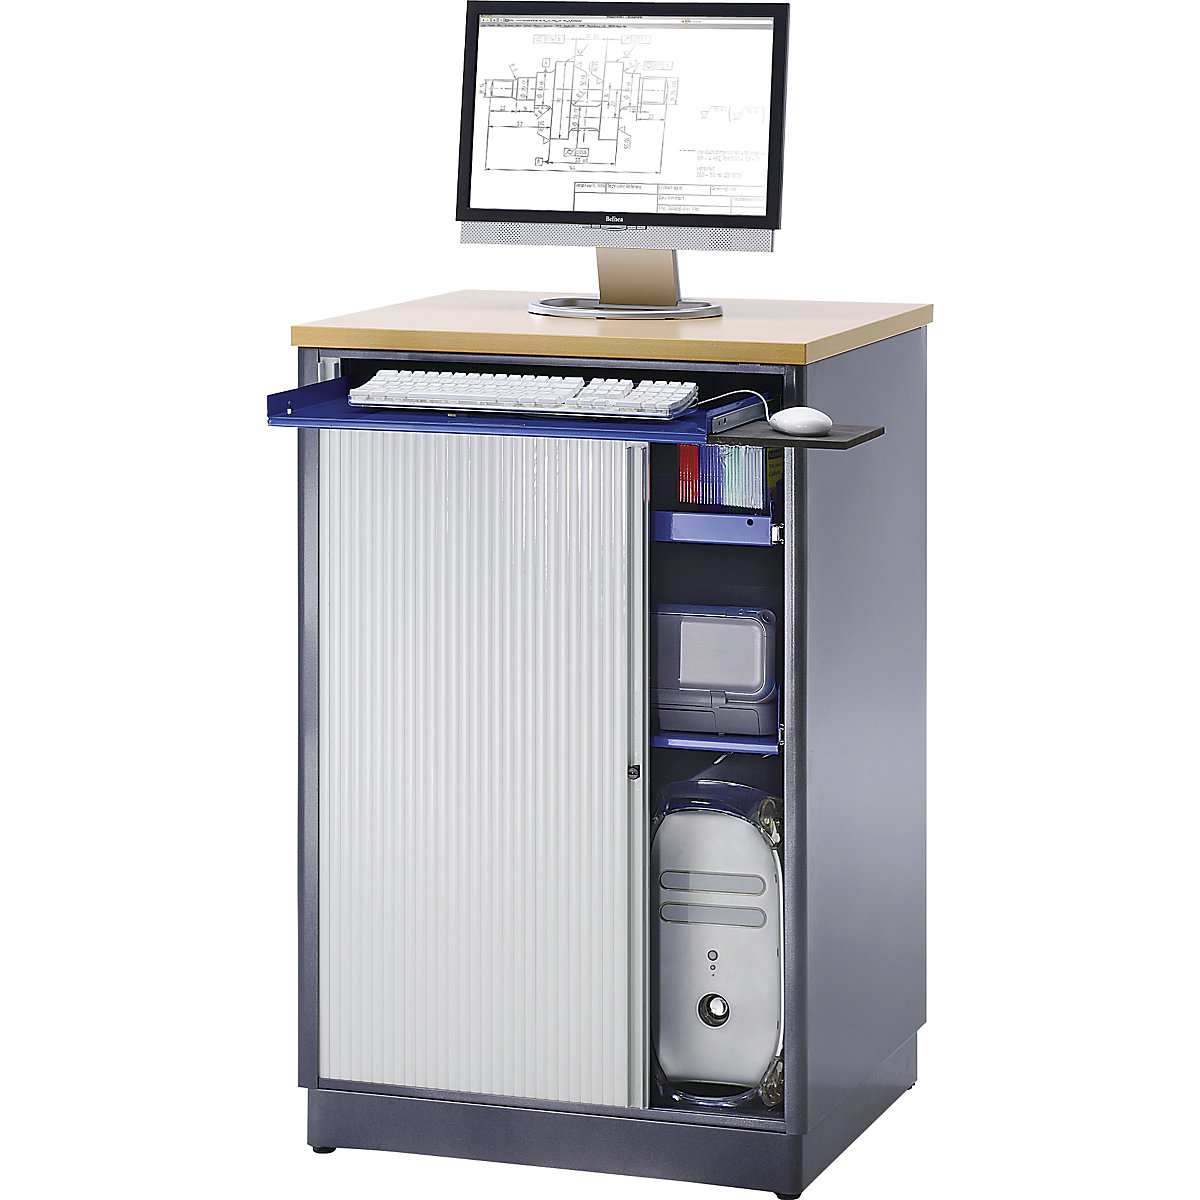 RAU – Posto de trabalho com computador, AxLxP 1100 x 720 x 660 mm, antracite metalizado/azul genciana